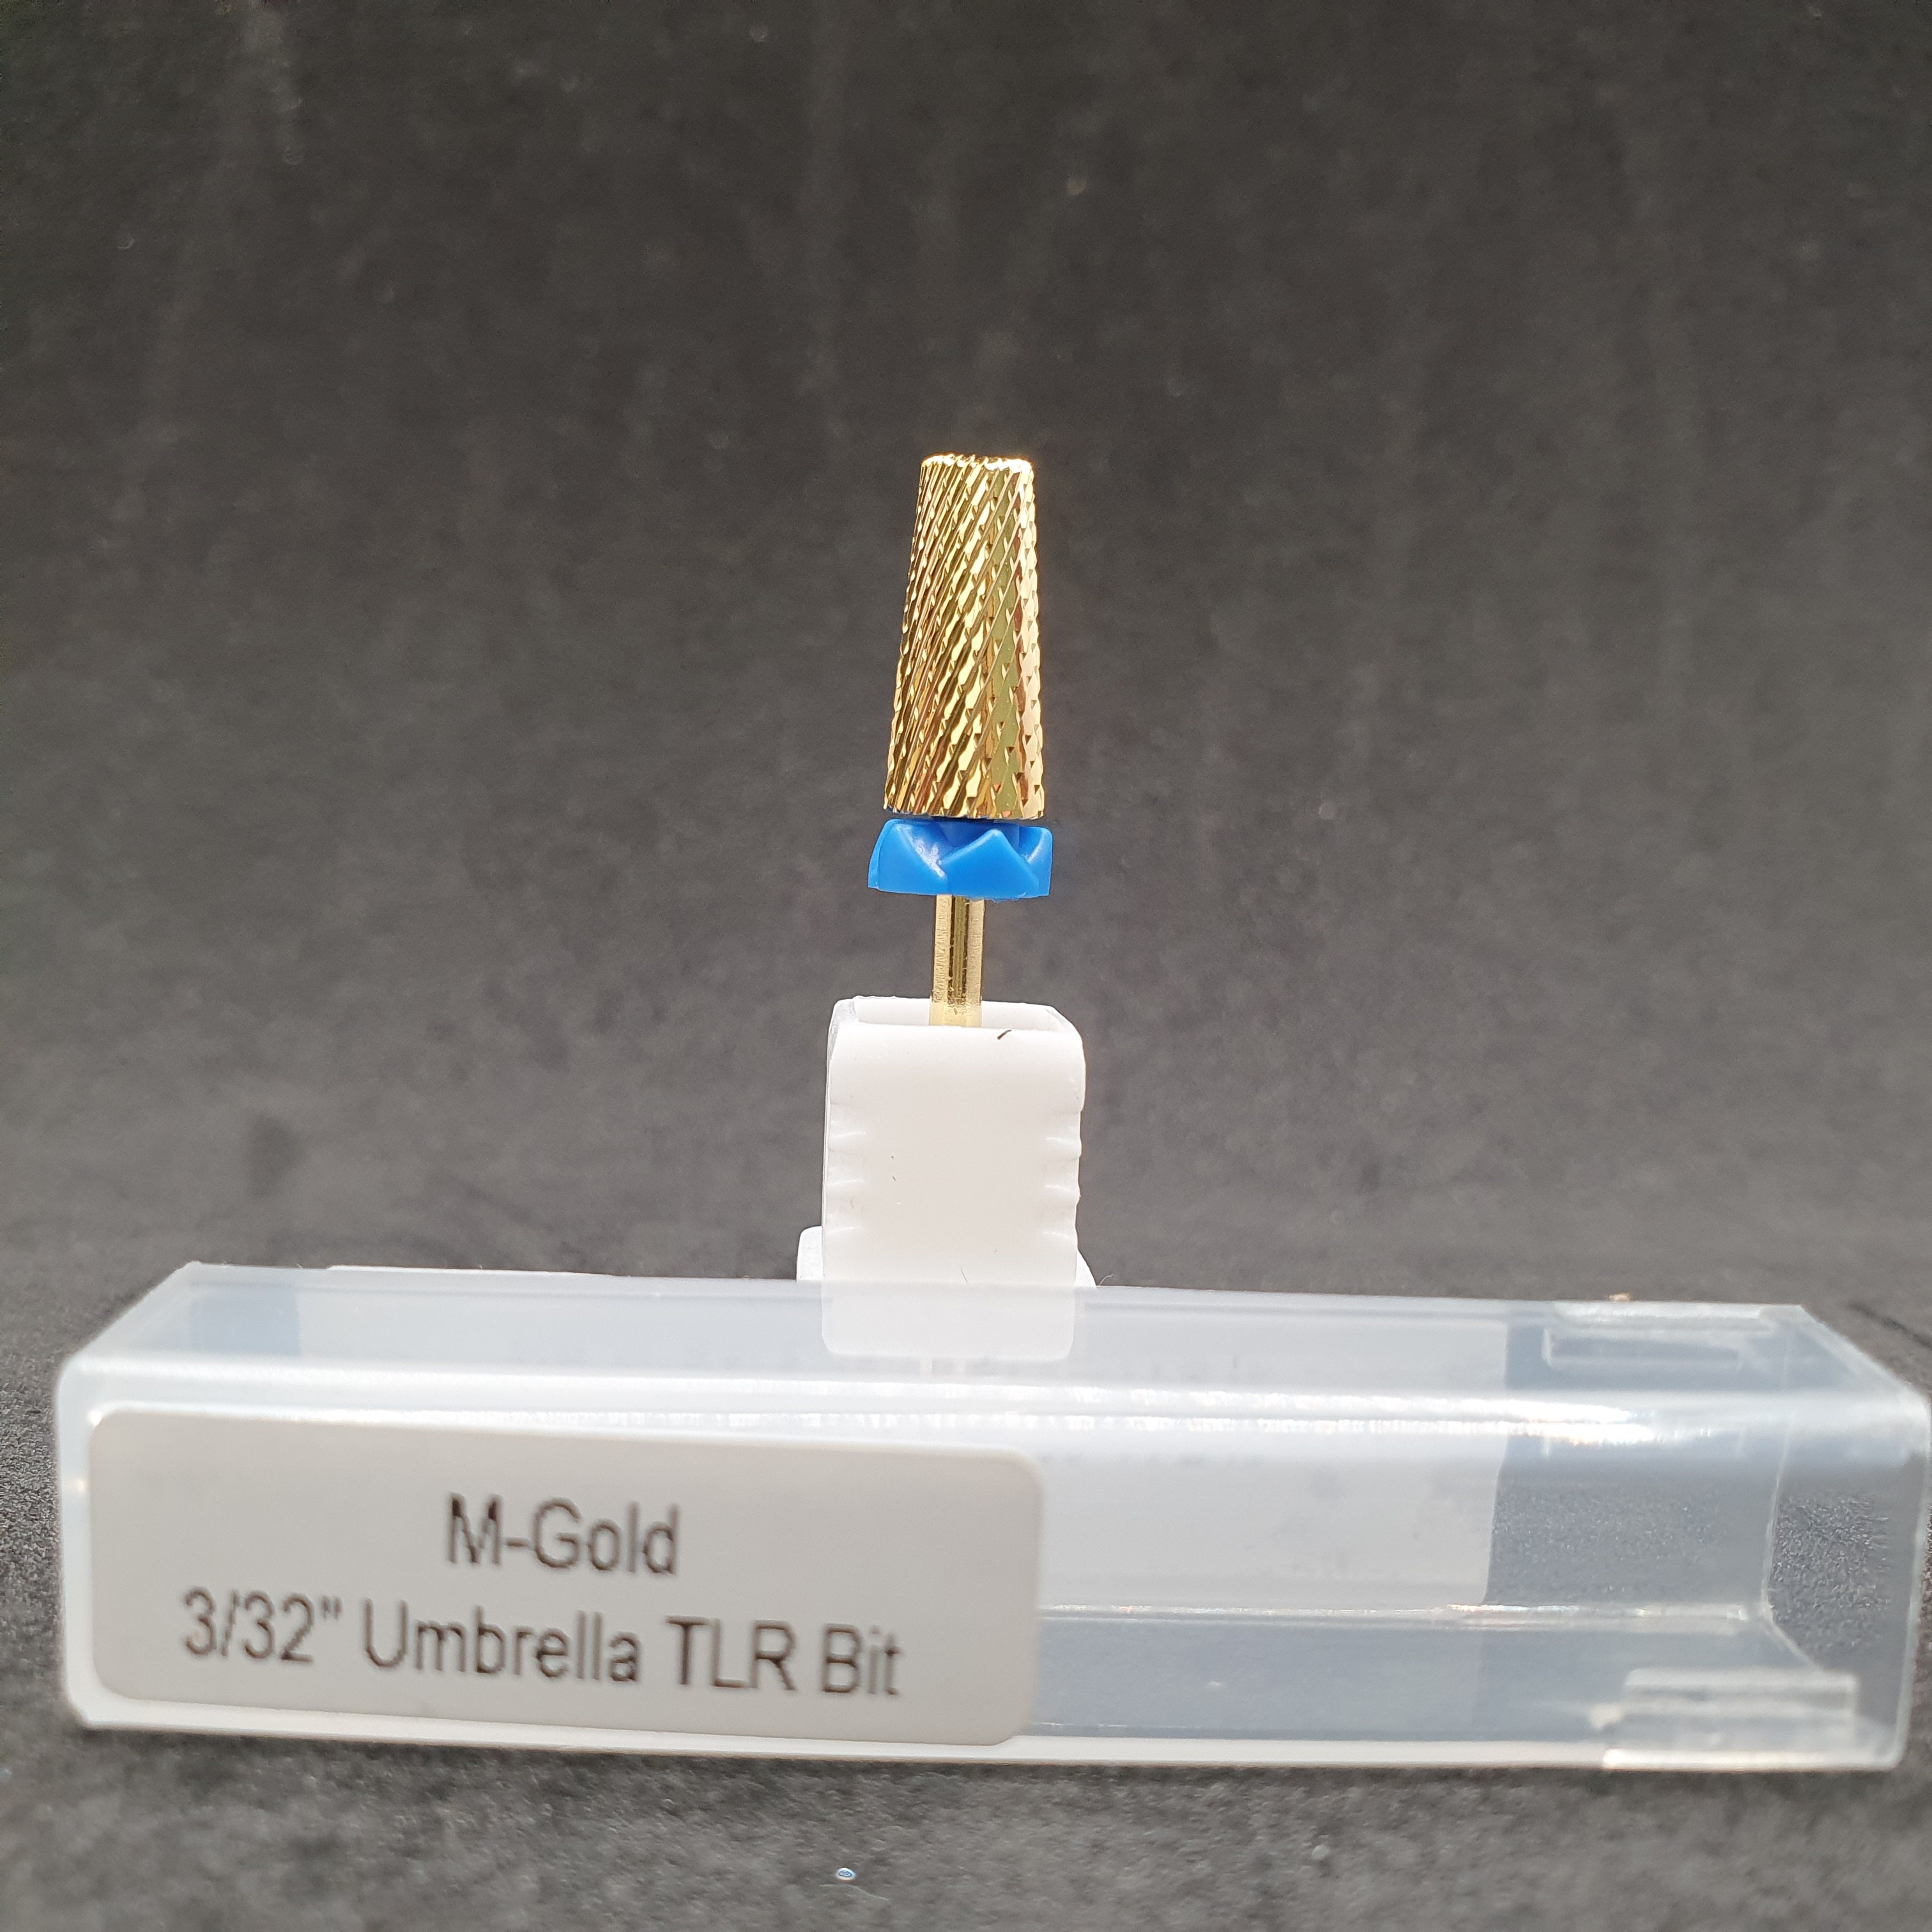 M-GOLD  3/32"  UMBRELLA TLR Bit- DIAMOND CUT